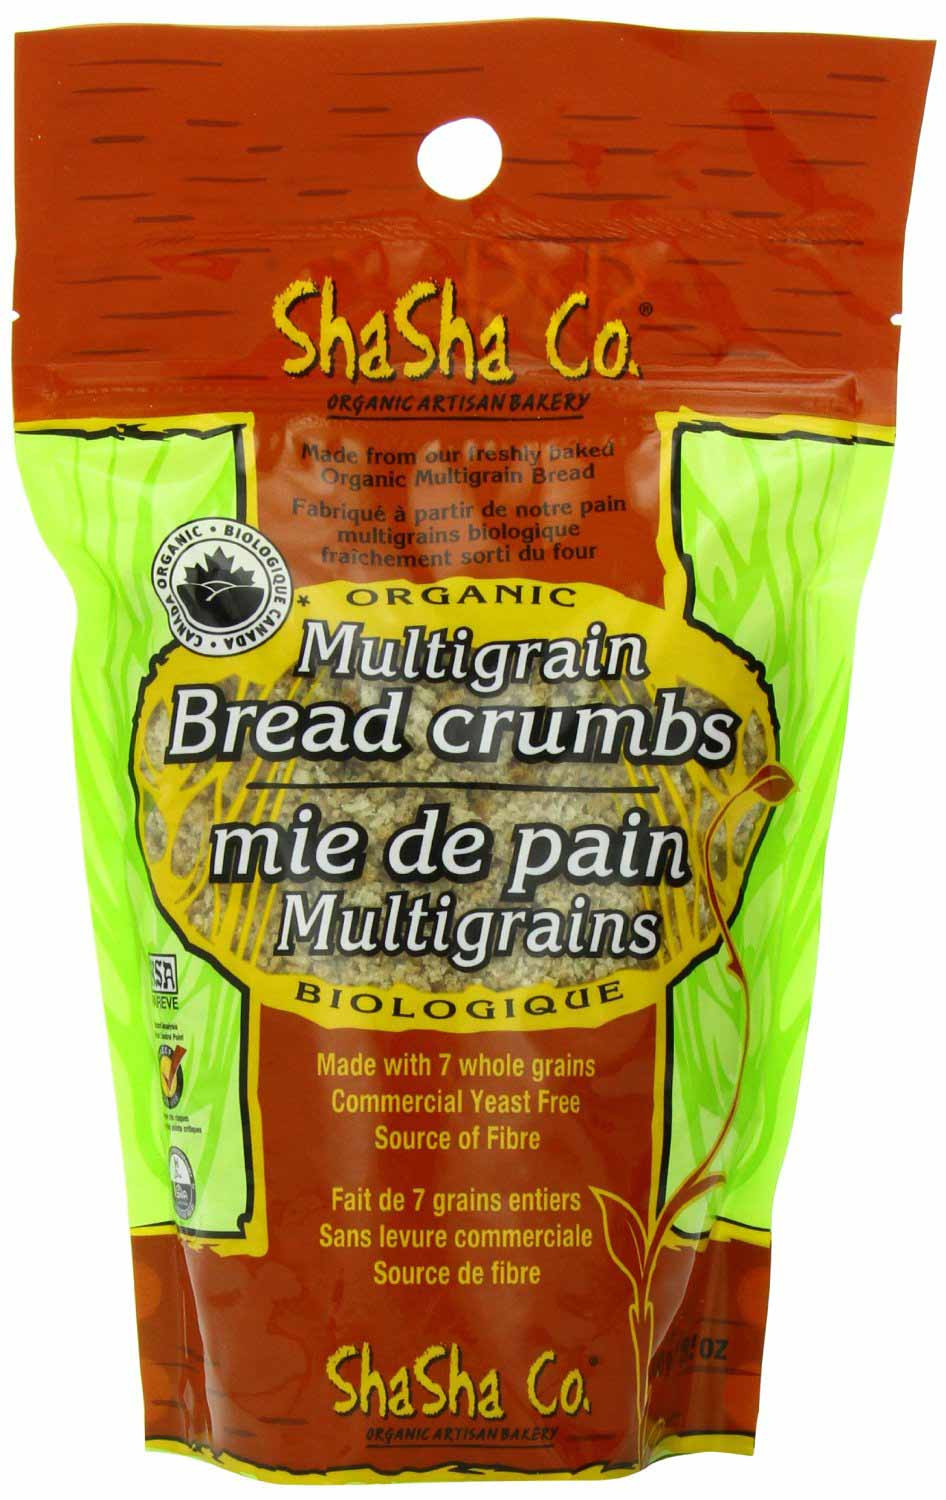 Whole Grain Bread Crumbs
 Organic Multigrain Bread Crumbs by Shasha Bread Co